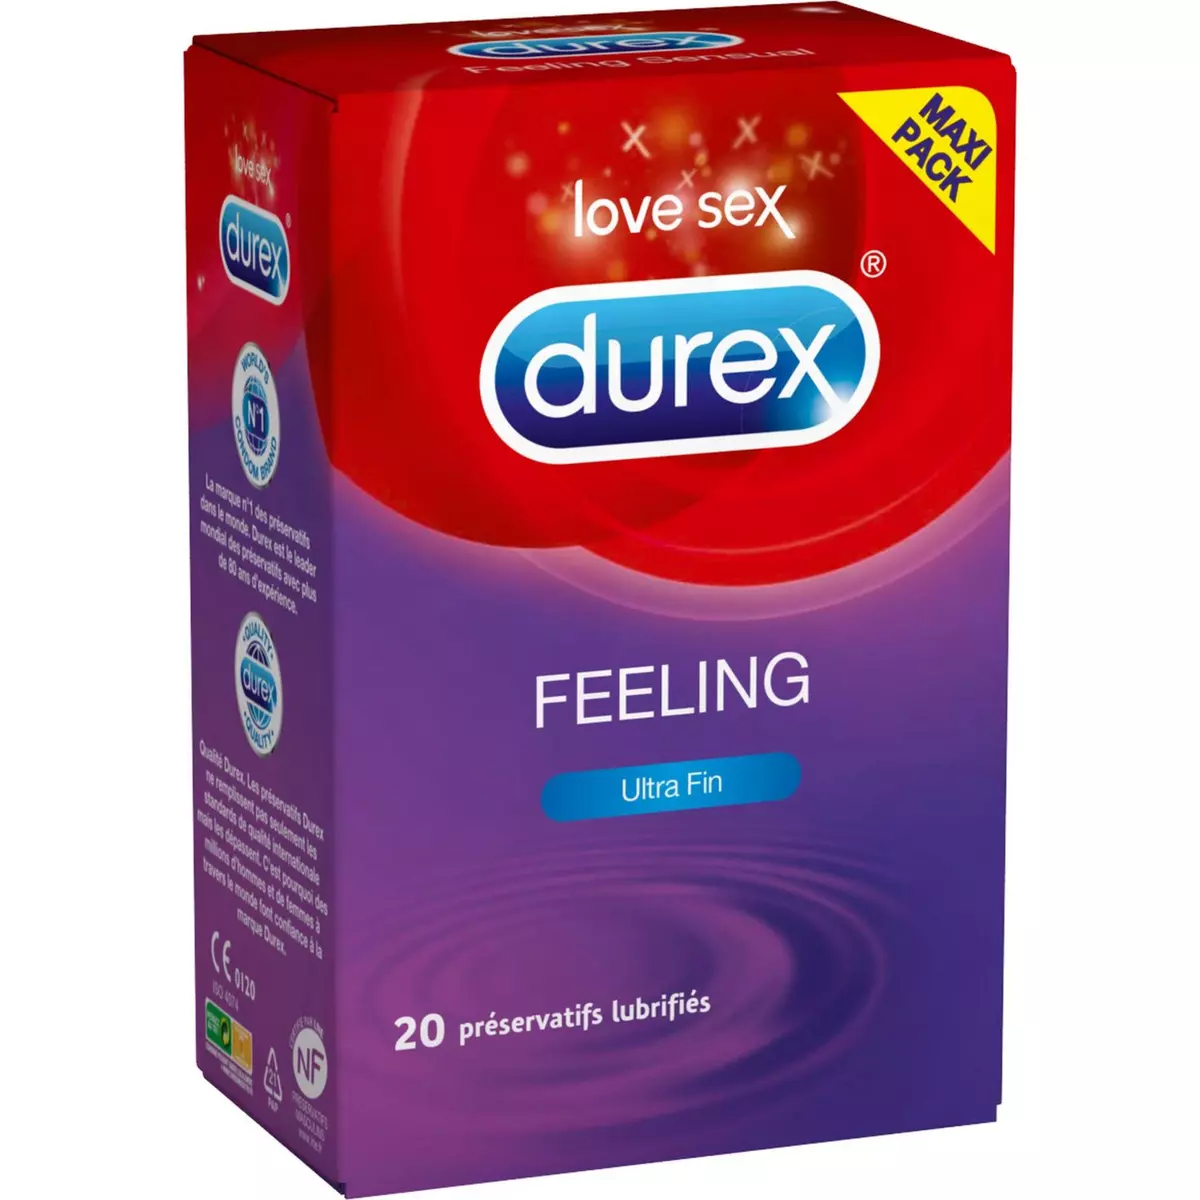 DUREX Feeling préservatifs lubrifiés très fins 20 préservatifs